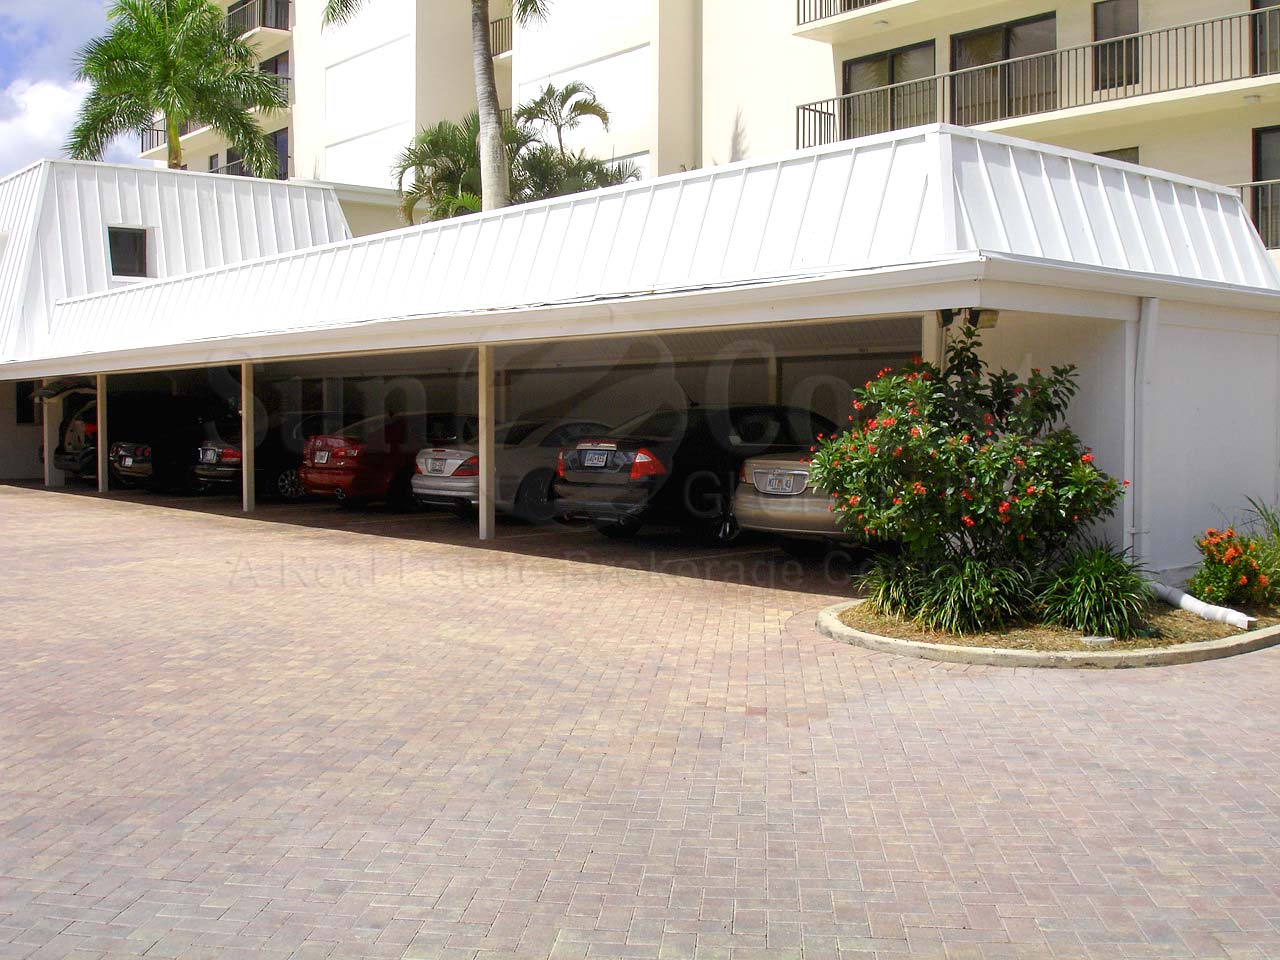 Gulf View Beach Club Covered Parking